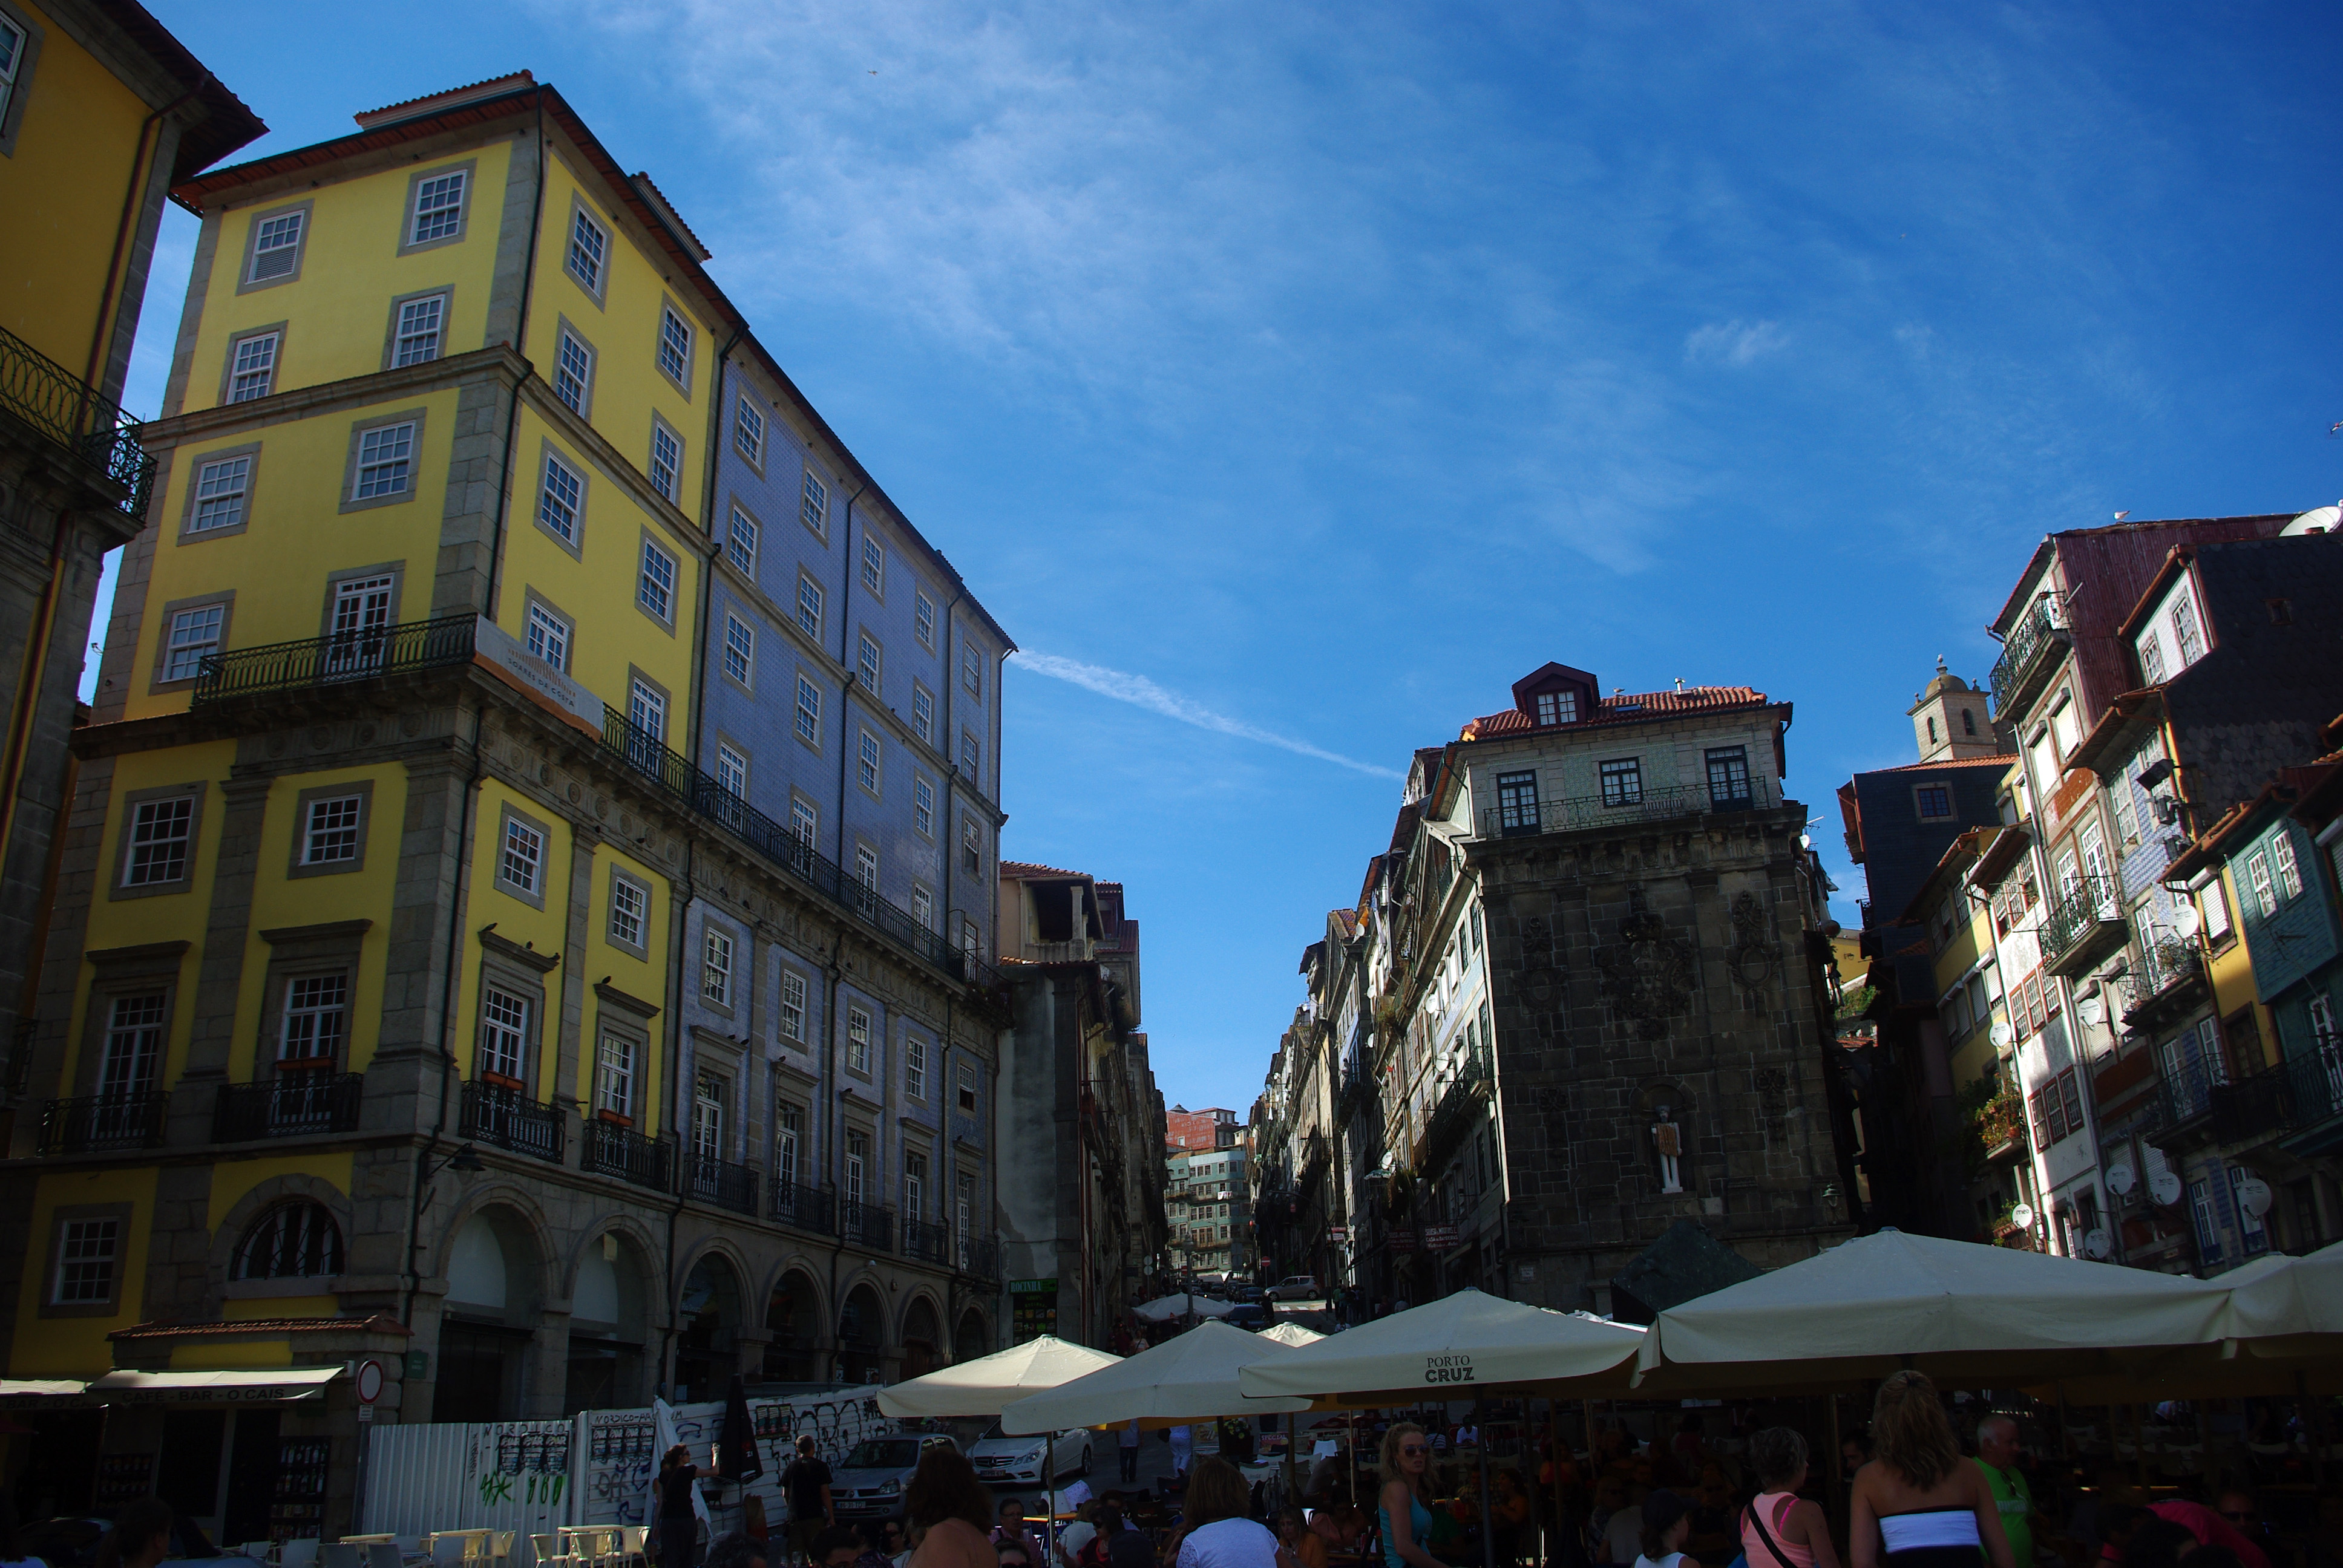 Foto de Oprto (Porto), Portugal